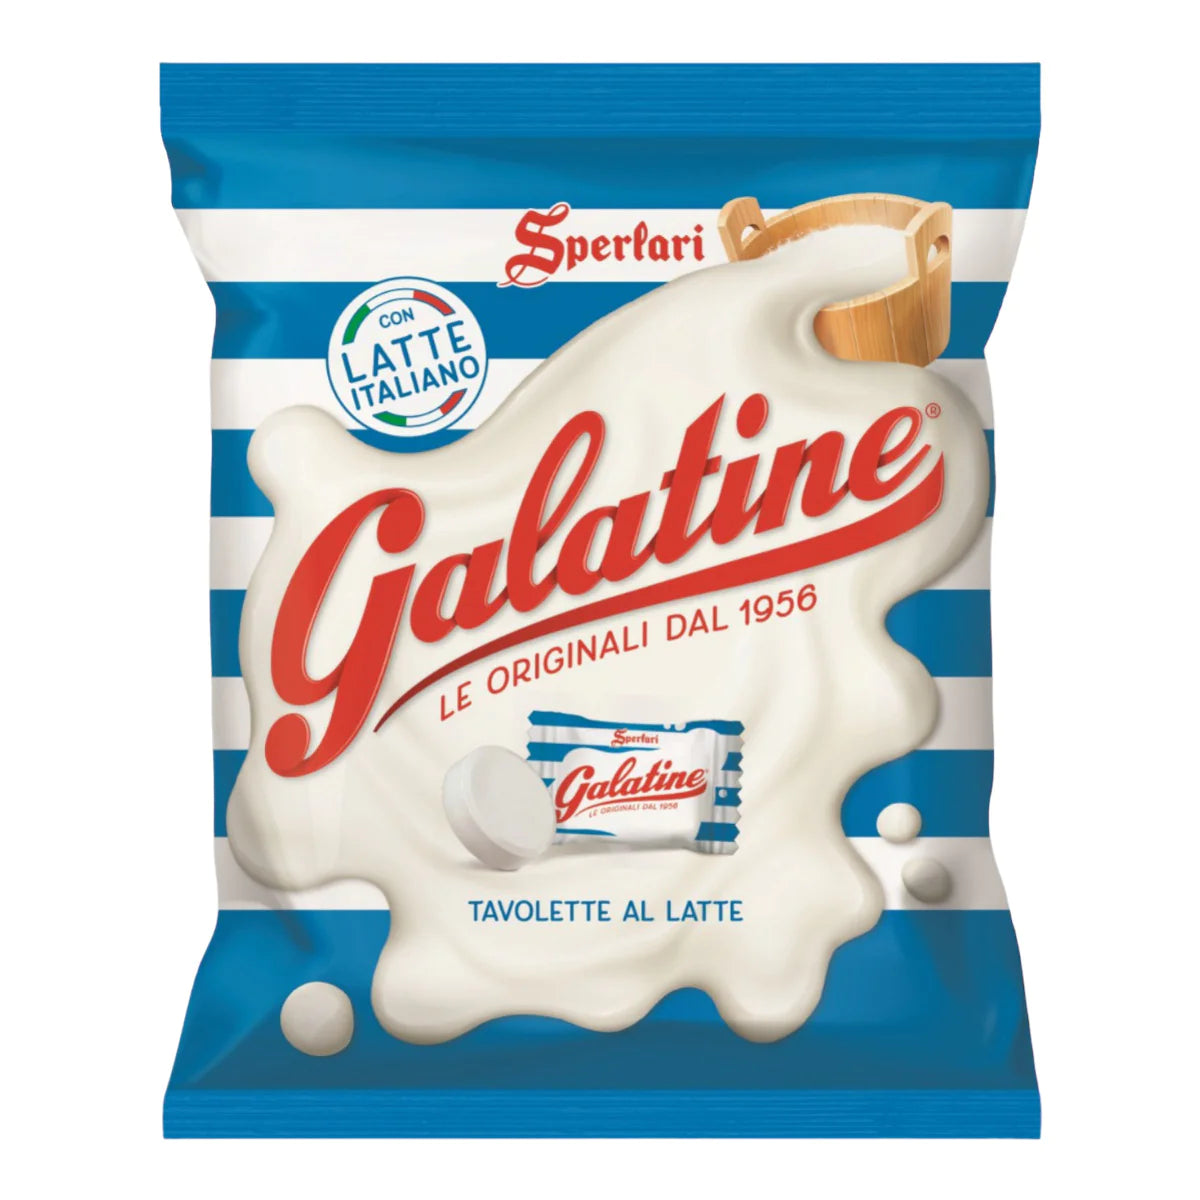 galatine tavolette milk tablets 意大利高钙奶片 125g